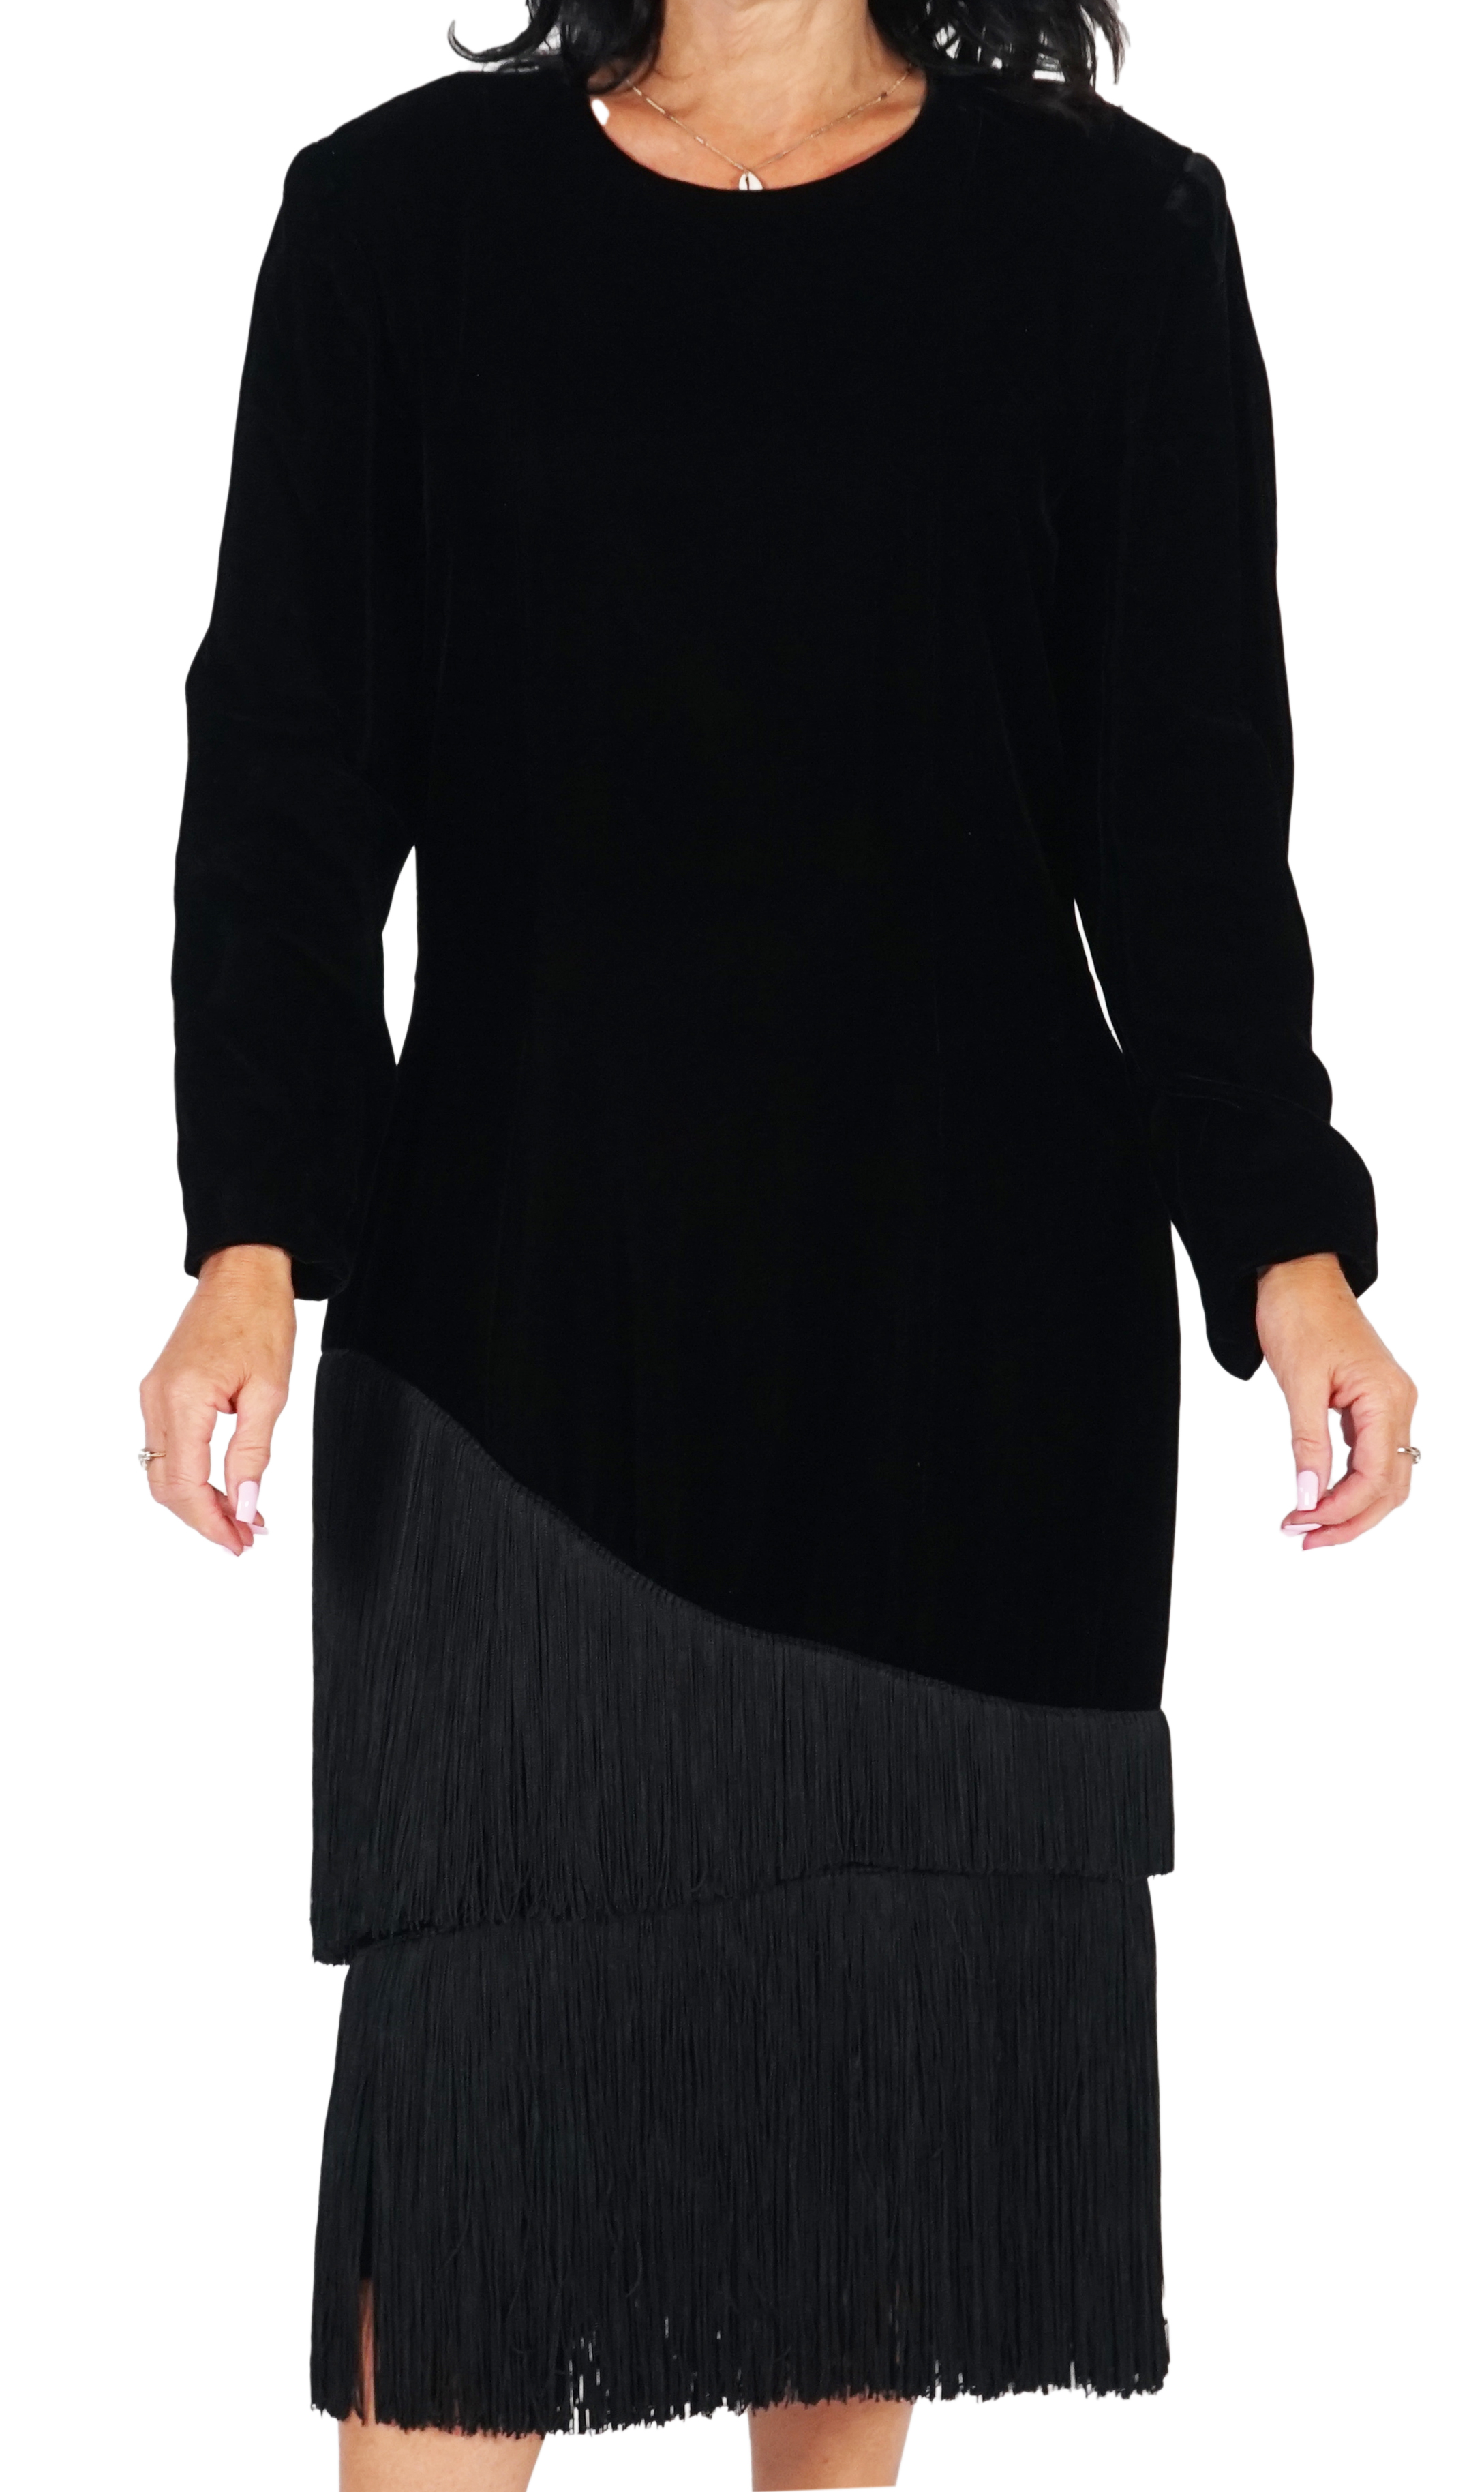 A vintage Lanvin black velvet dress with fringe, approx Medium size 12